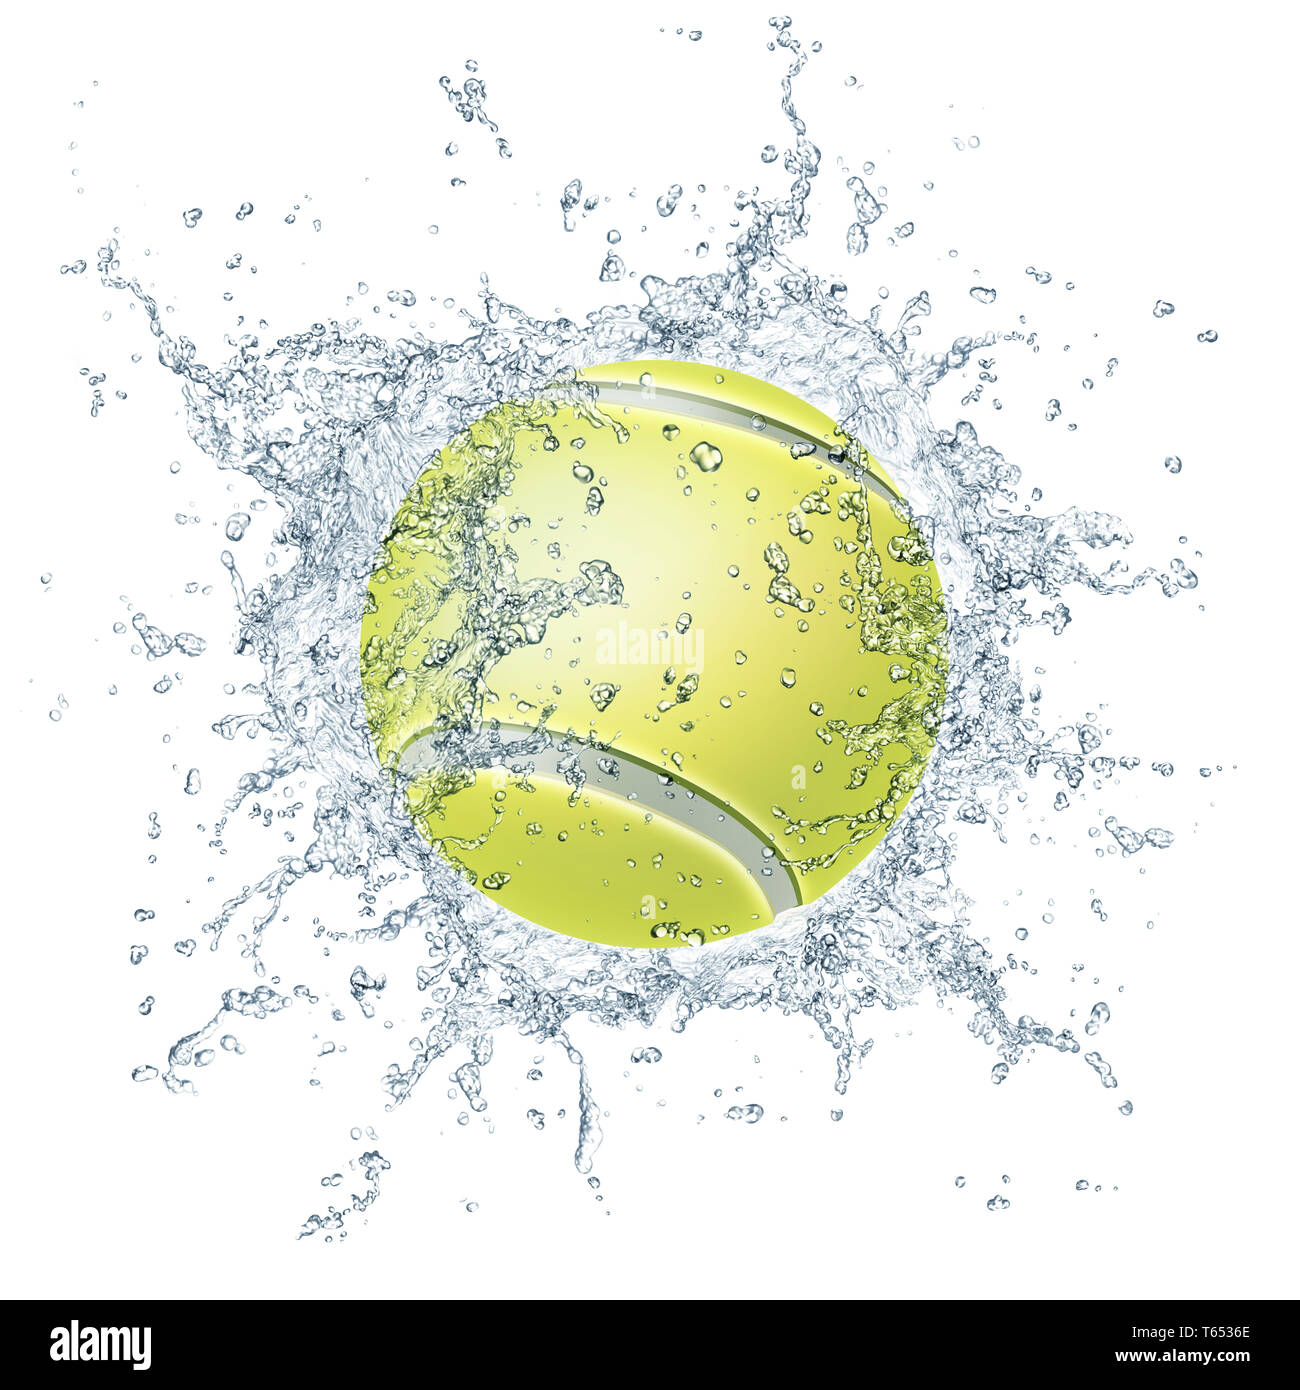 Balle de tennis Banque D'Images